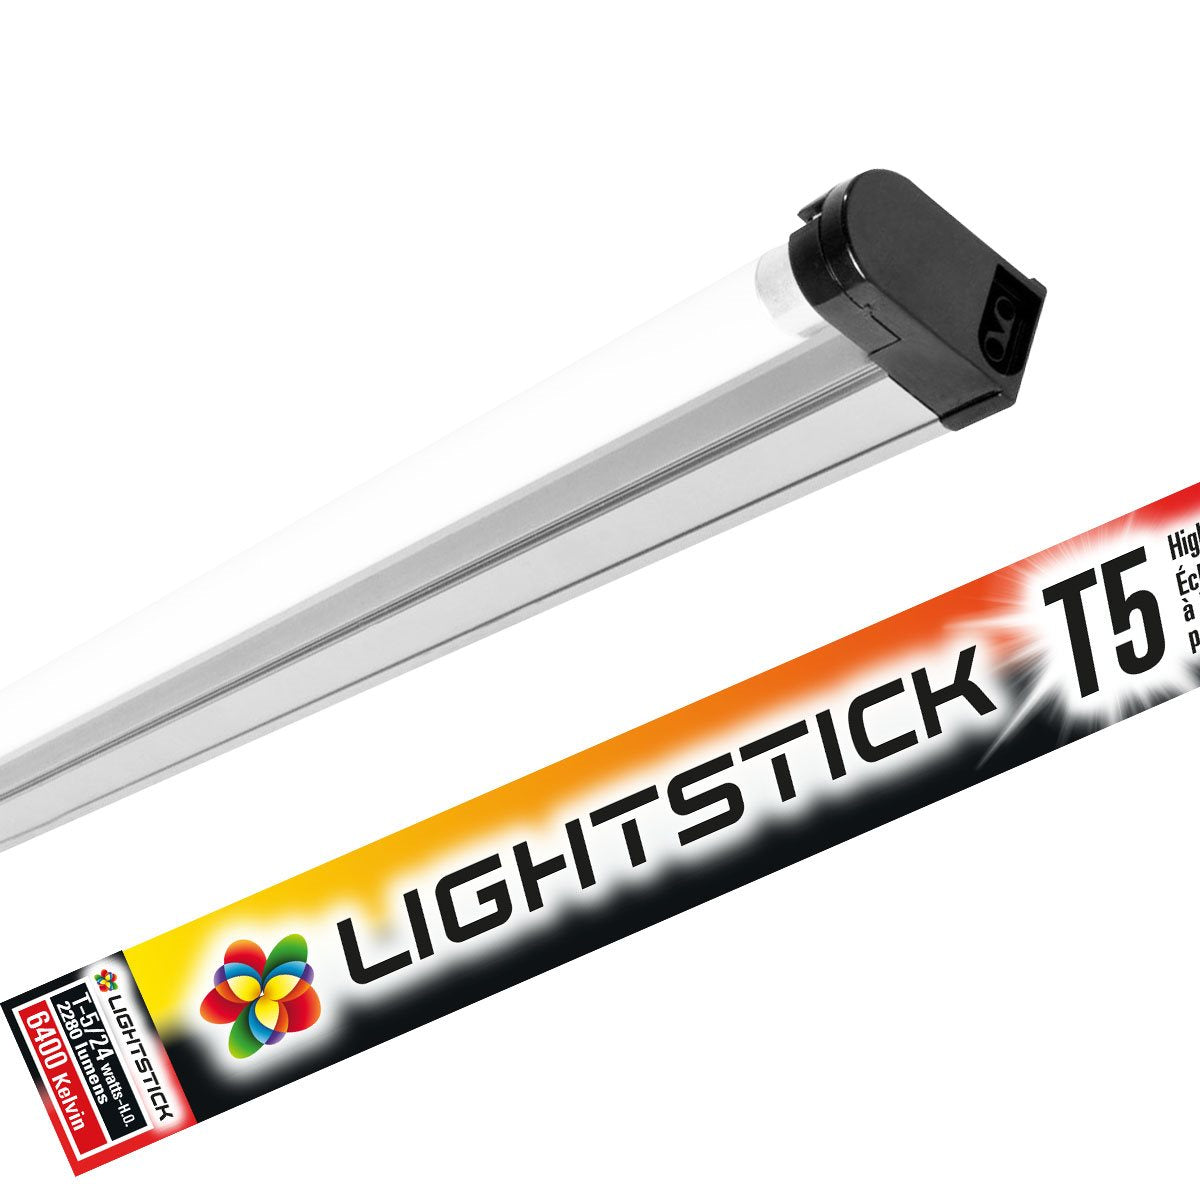 lightstick-24-t5-fixture-fluorescent-24w-6400k-115012-Z